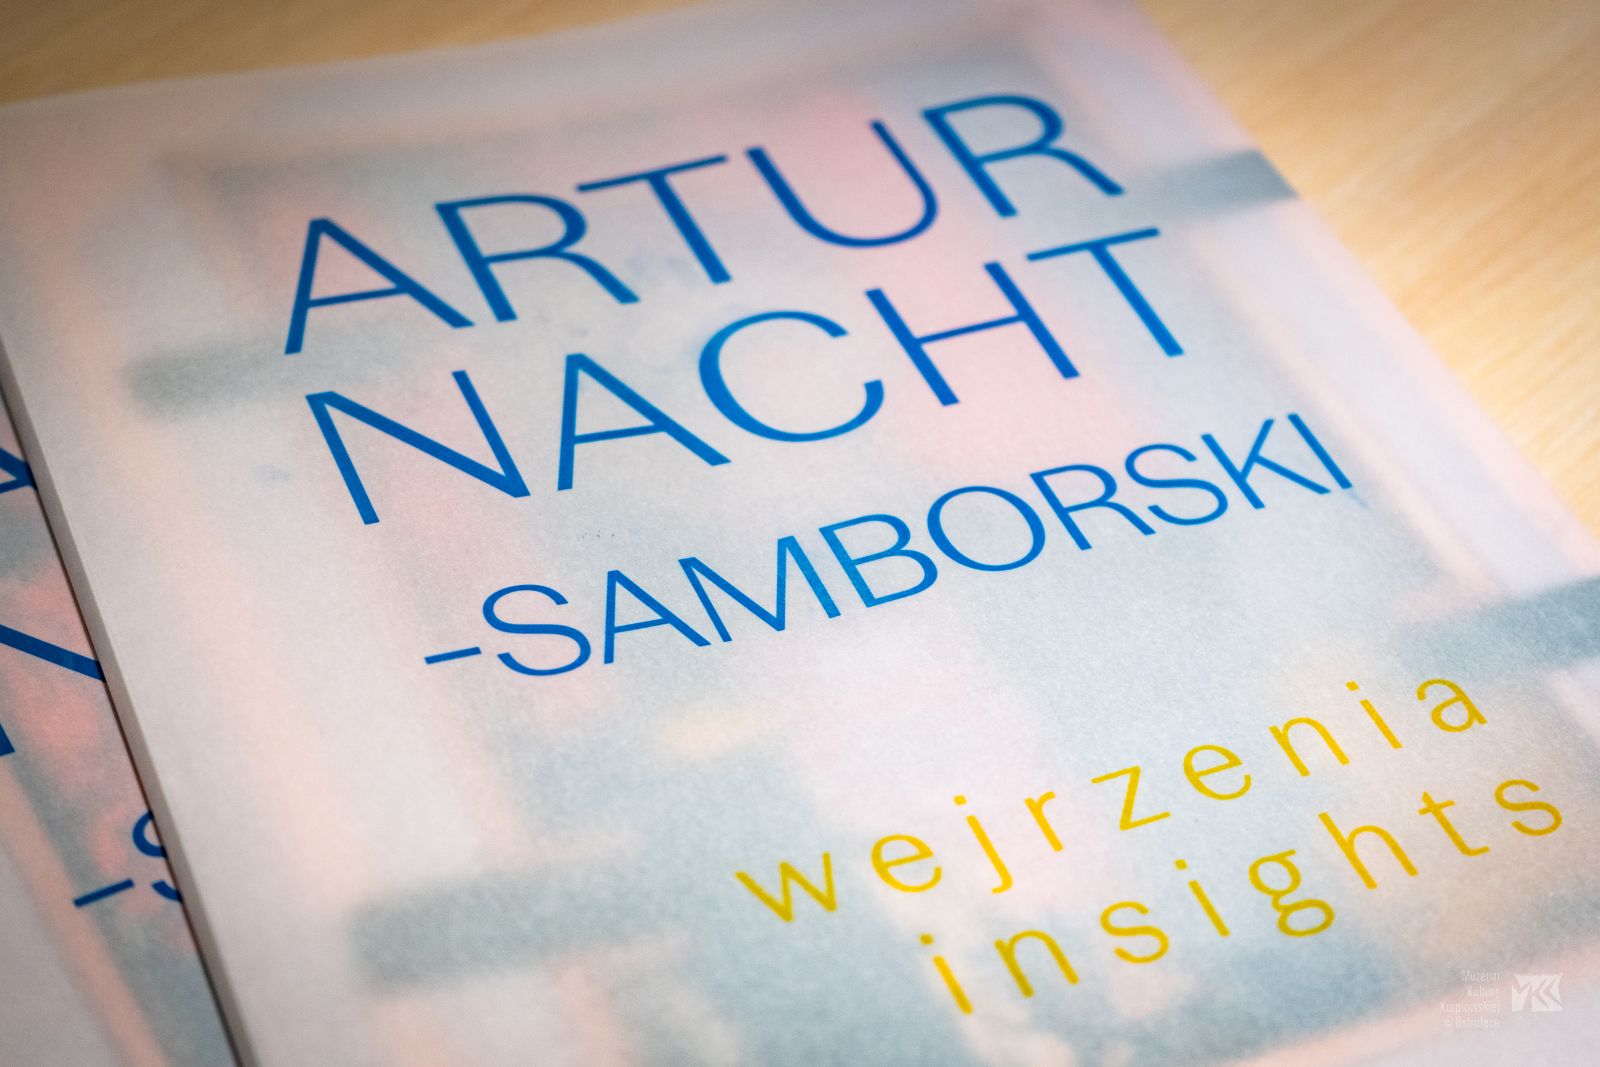 Wystawa czasowa „Artur Nacht-Samborski. Wejrzenia” została otwarta